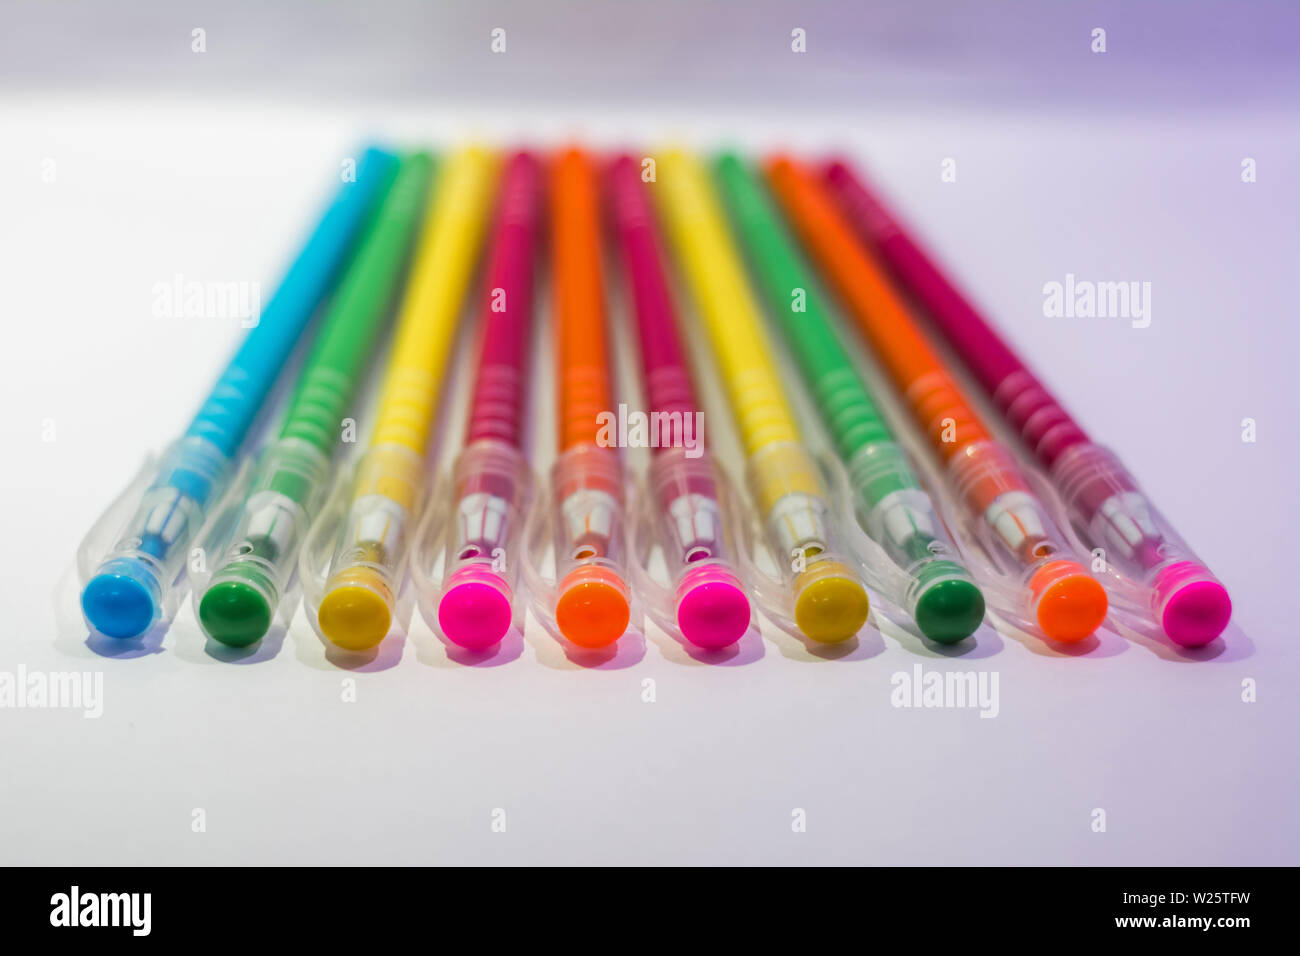 Penne colorate immagini e fotografie stock ad alta risoluzione - Alamy